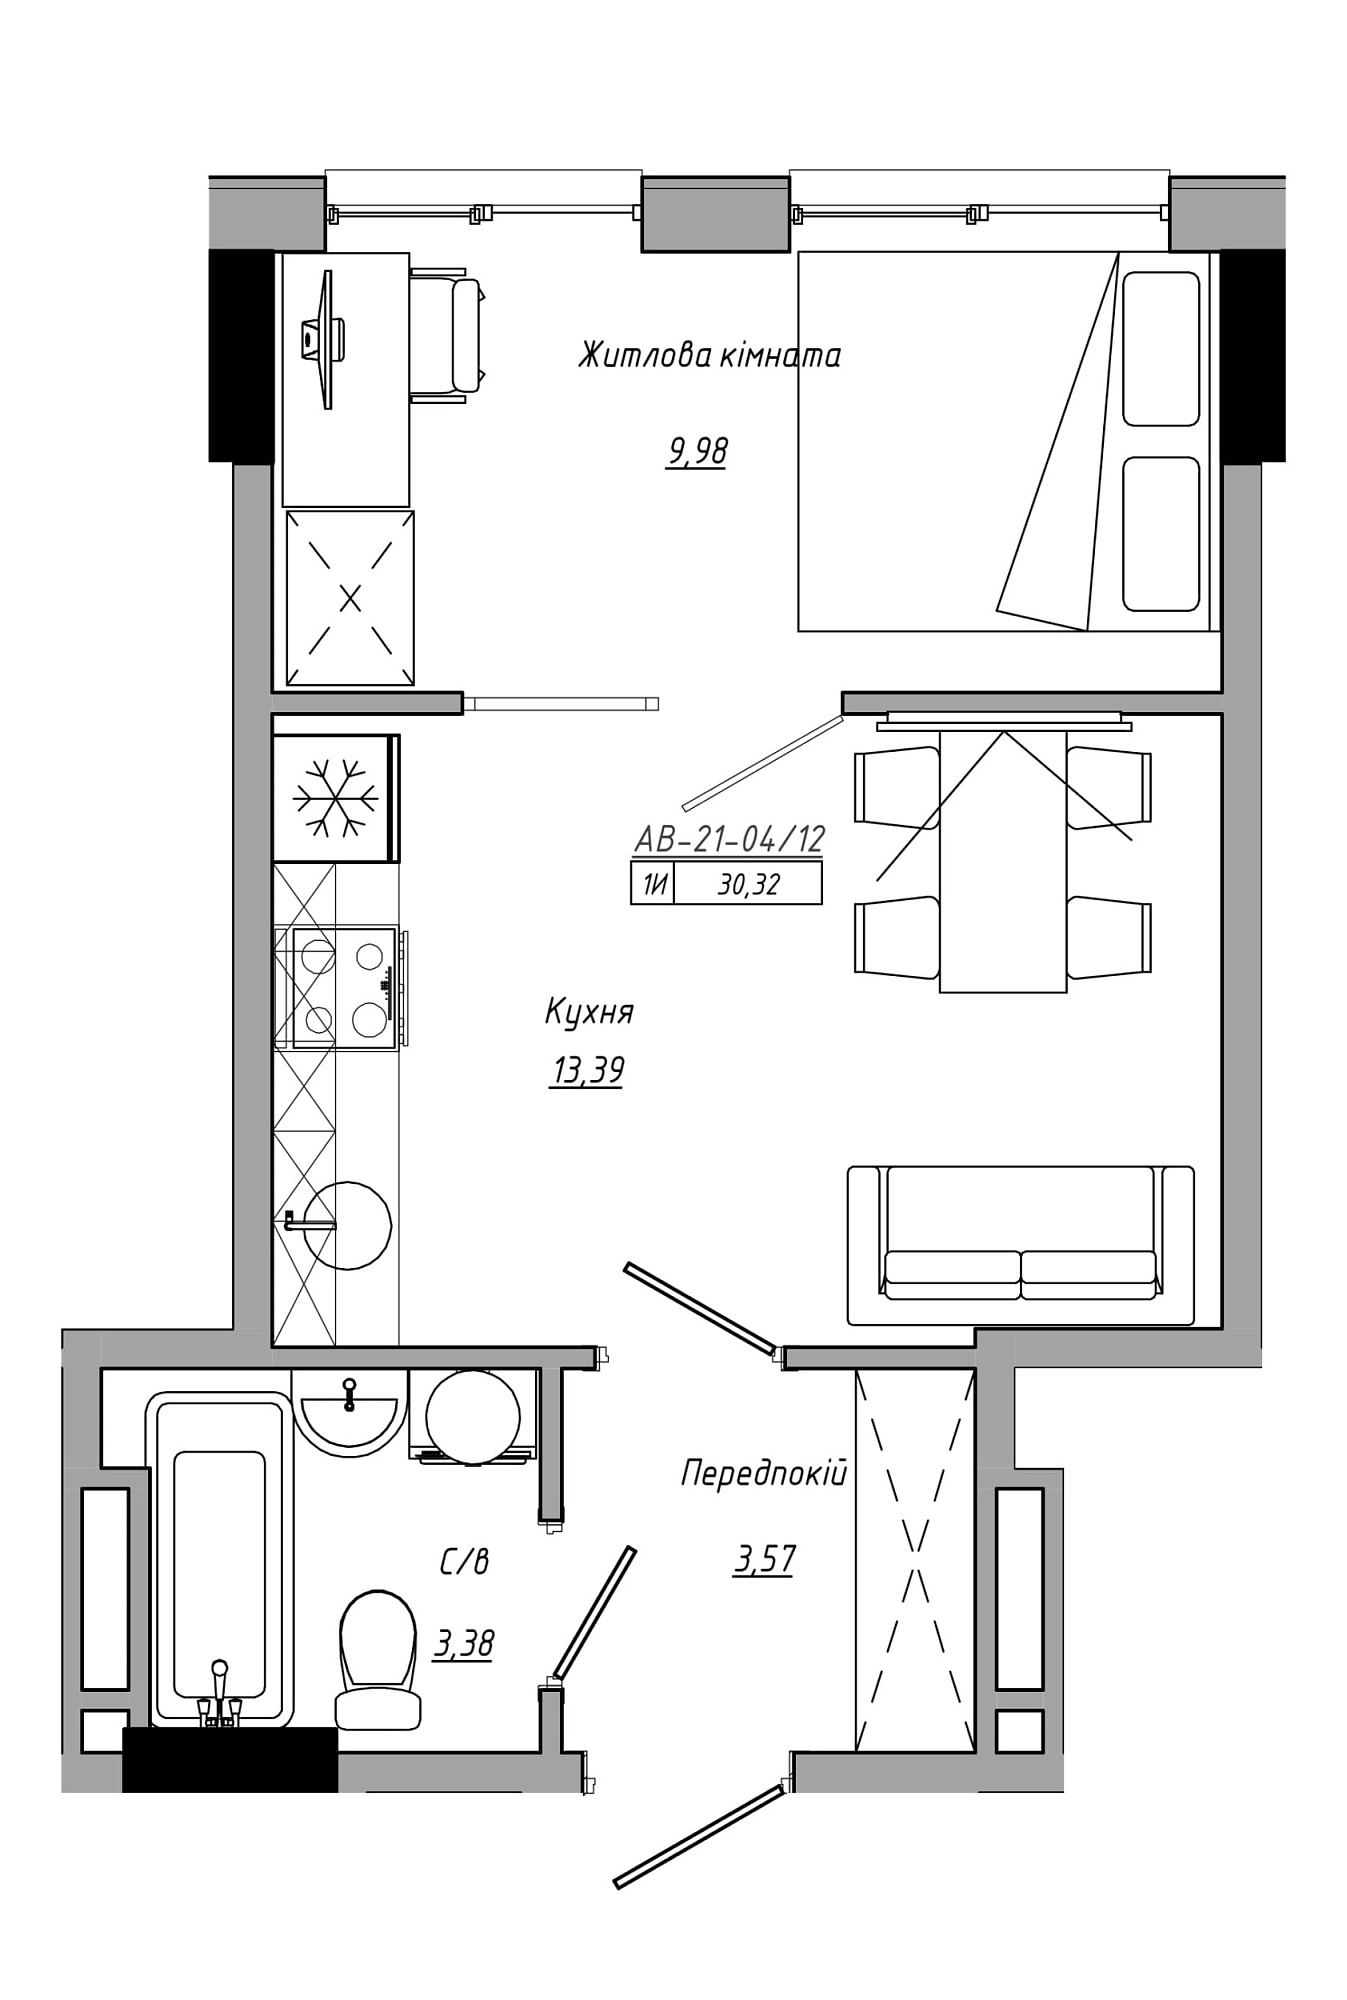 Планування 1-к квартира площею 30.32м2, AB-21-04/00012.